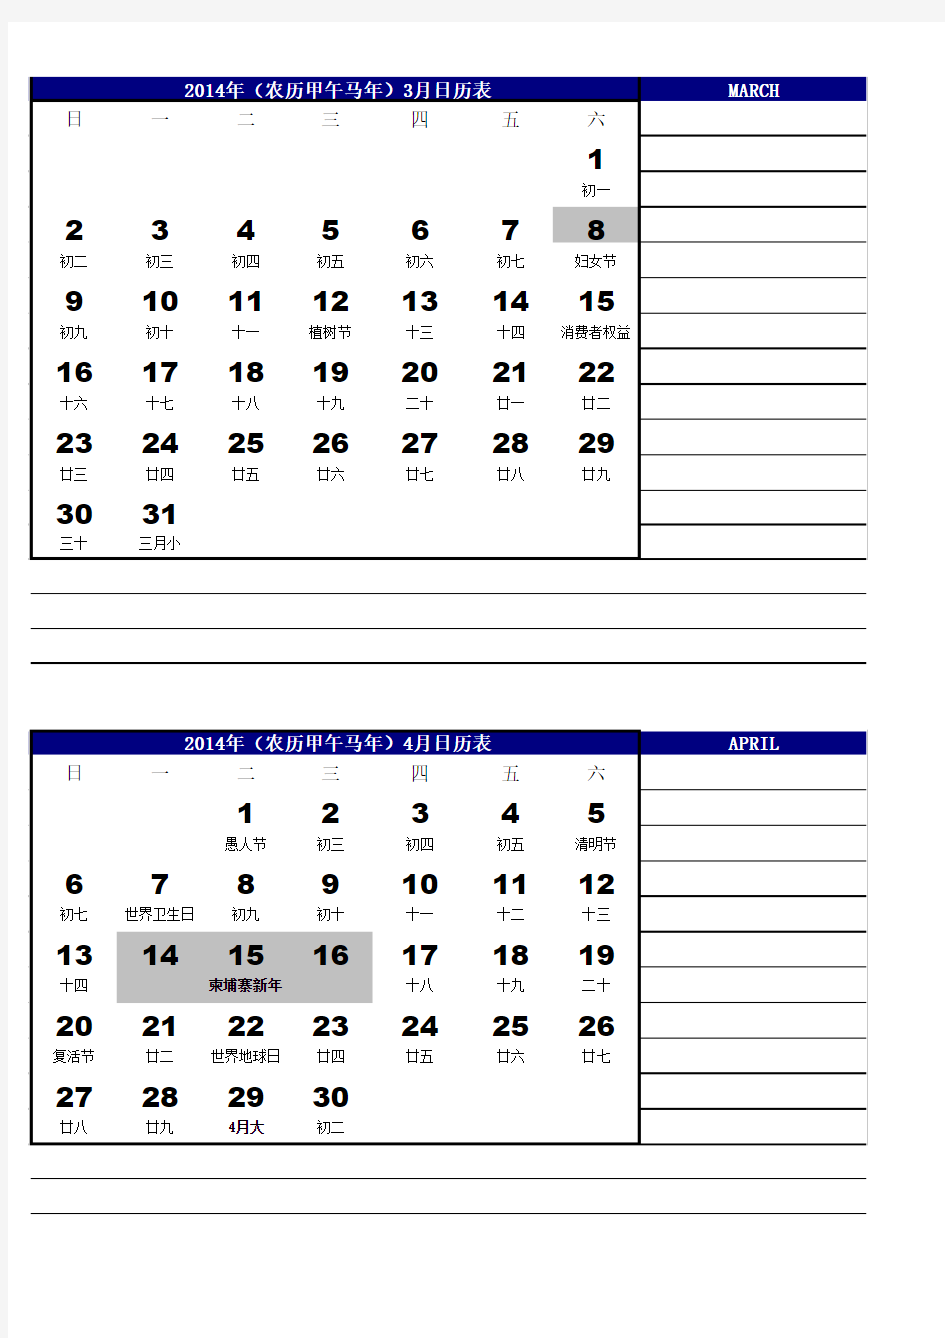 2014年日历表(含柬埔寨假期)